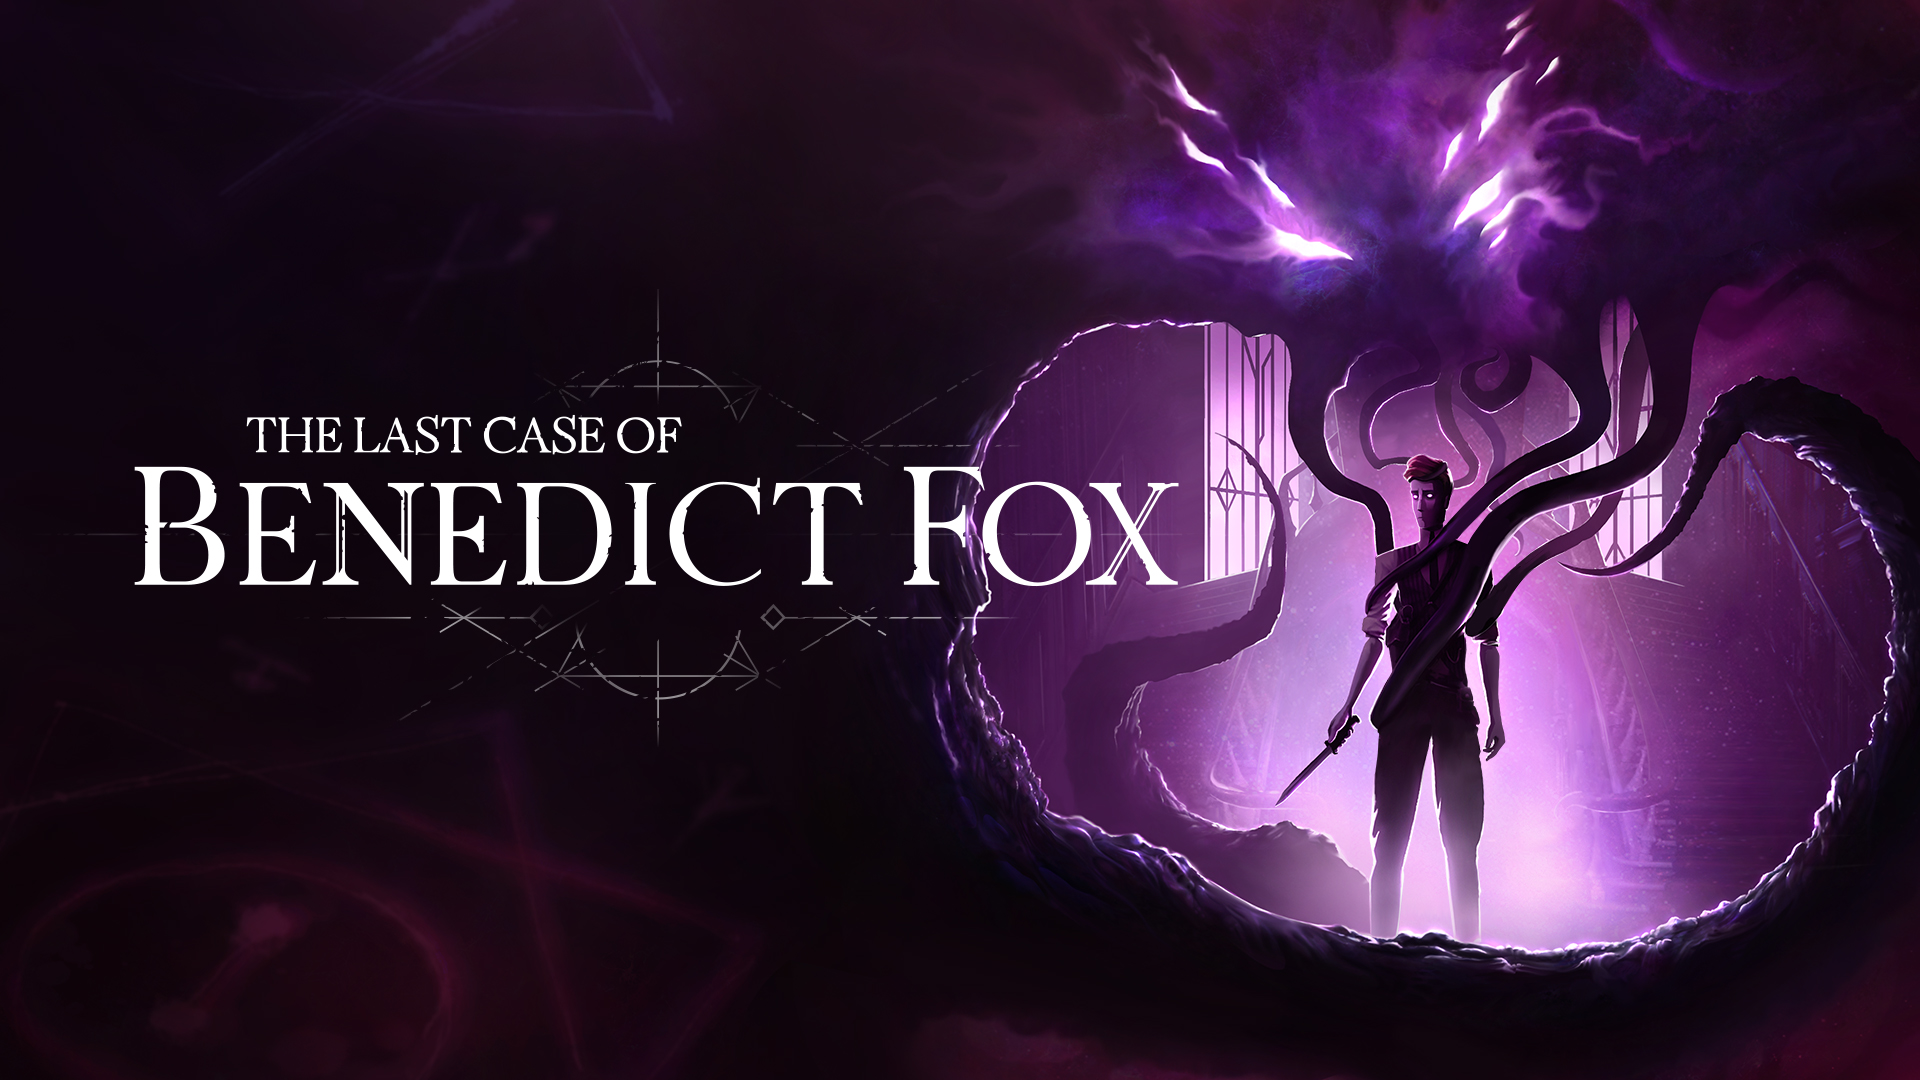 ビデオの対象『The Last Case of Benedict Fox』: 来年早々、ベネディクト フォックスは最後の事件に挑む